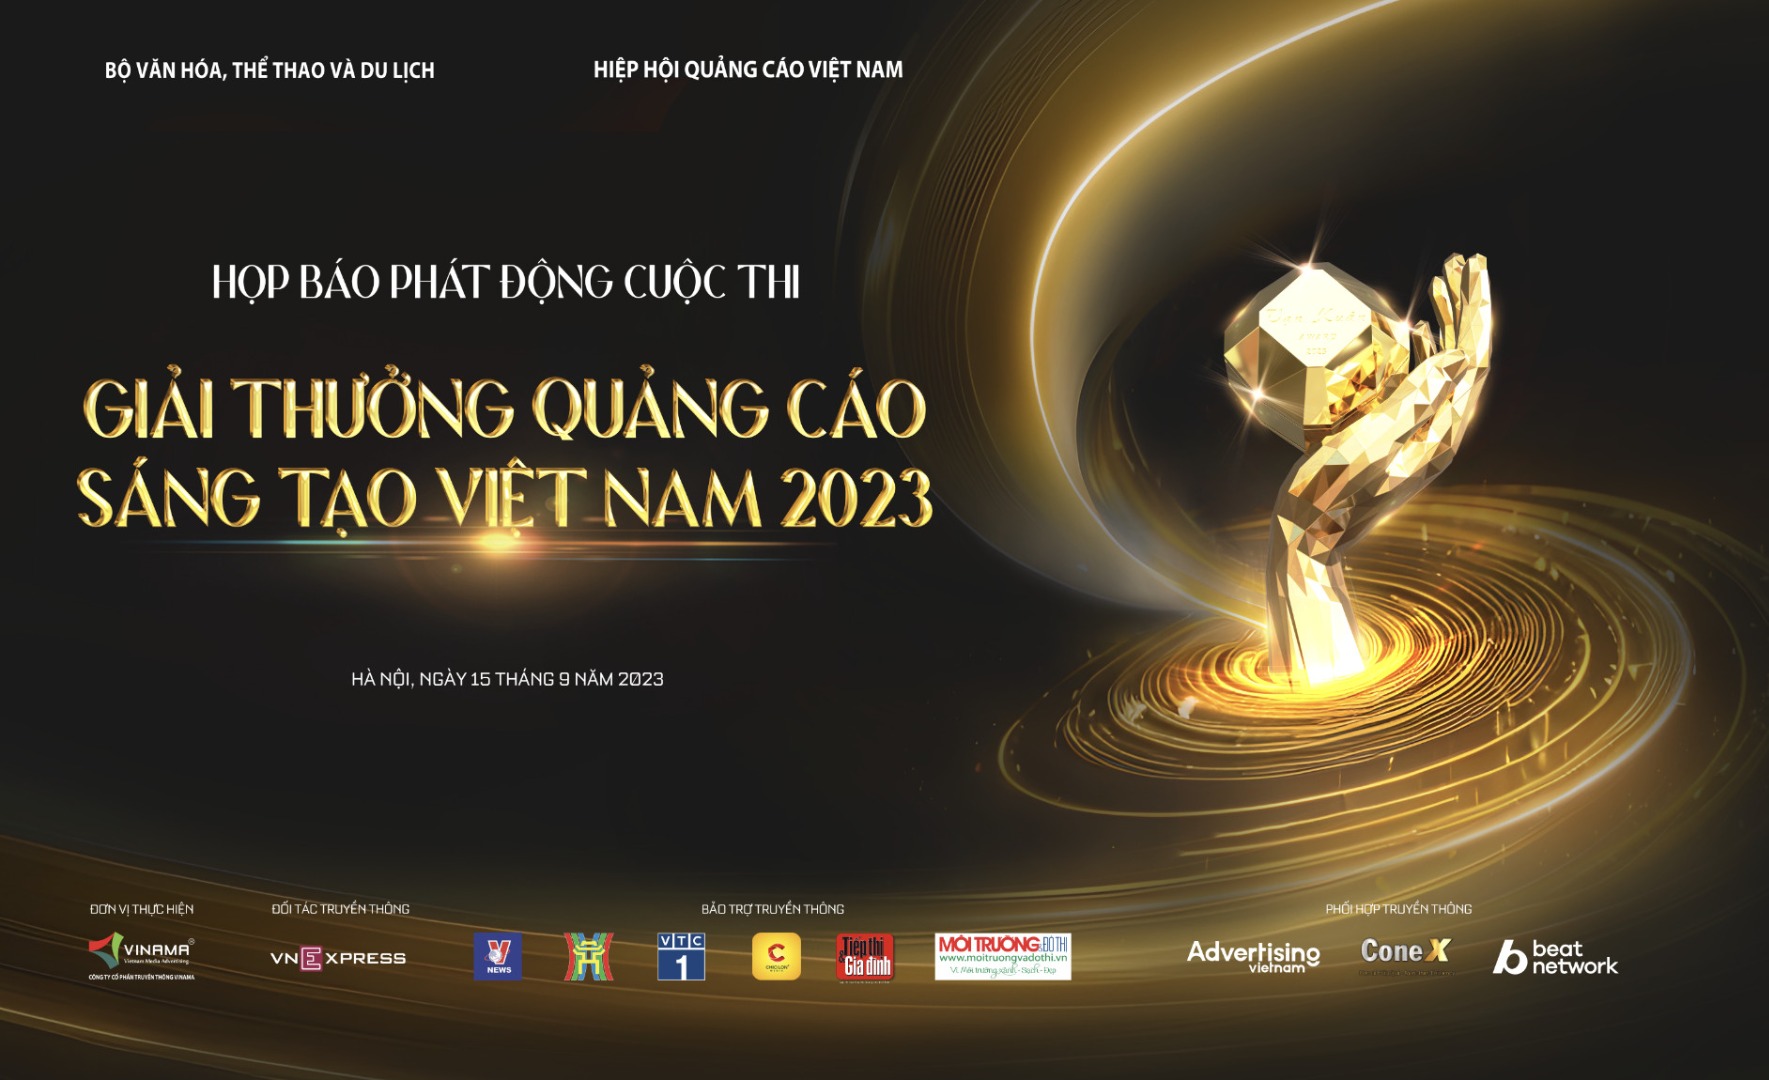 Giải thưởng Quảng cáo sáng tạo Việt Nam là cơ hội cho các tổ chức, cá nhân